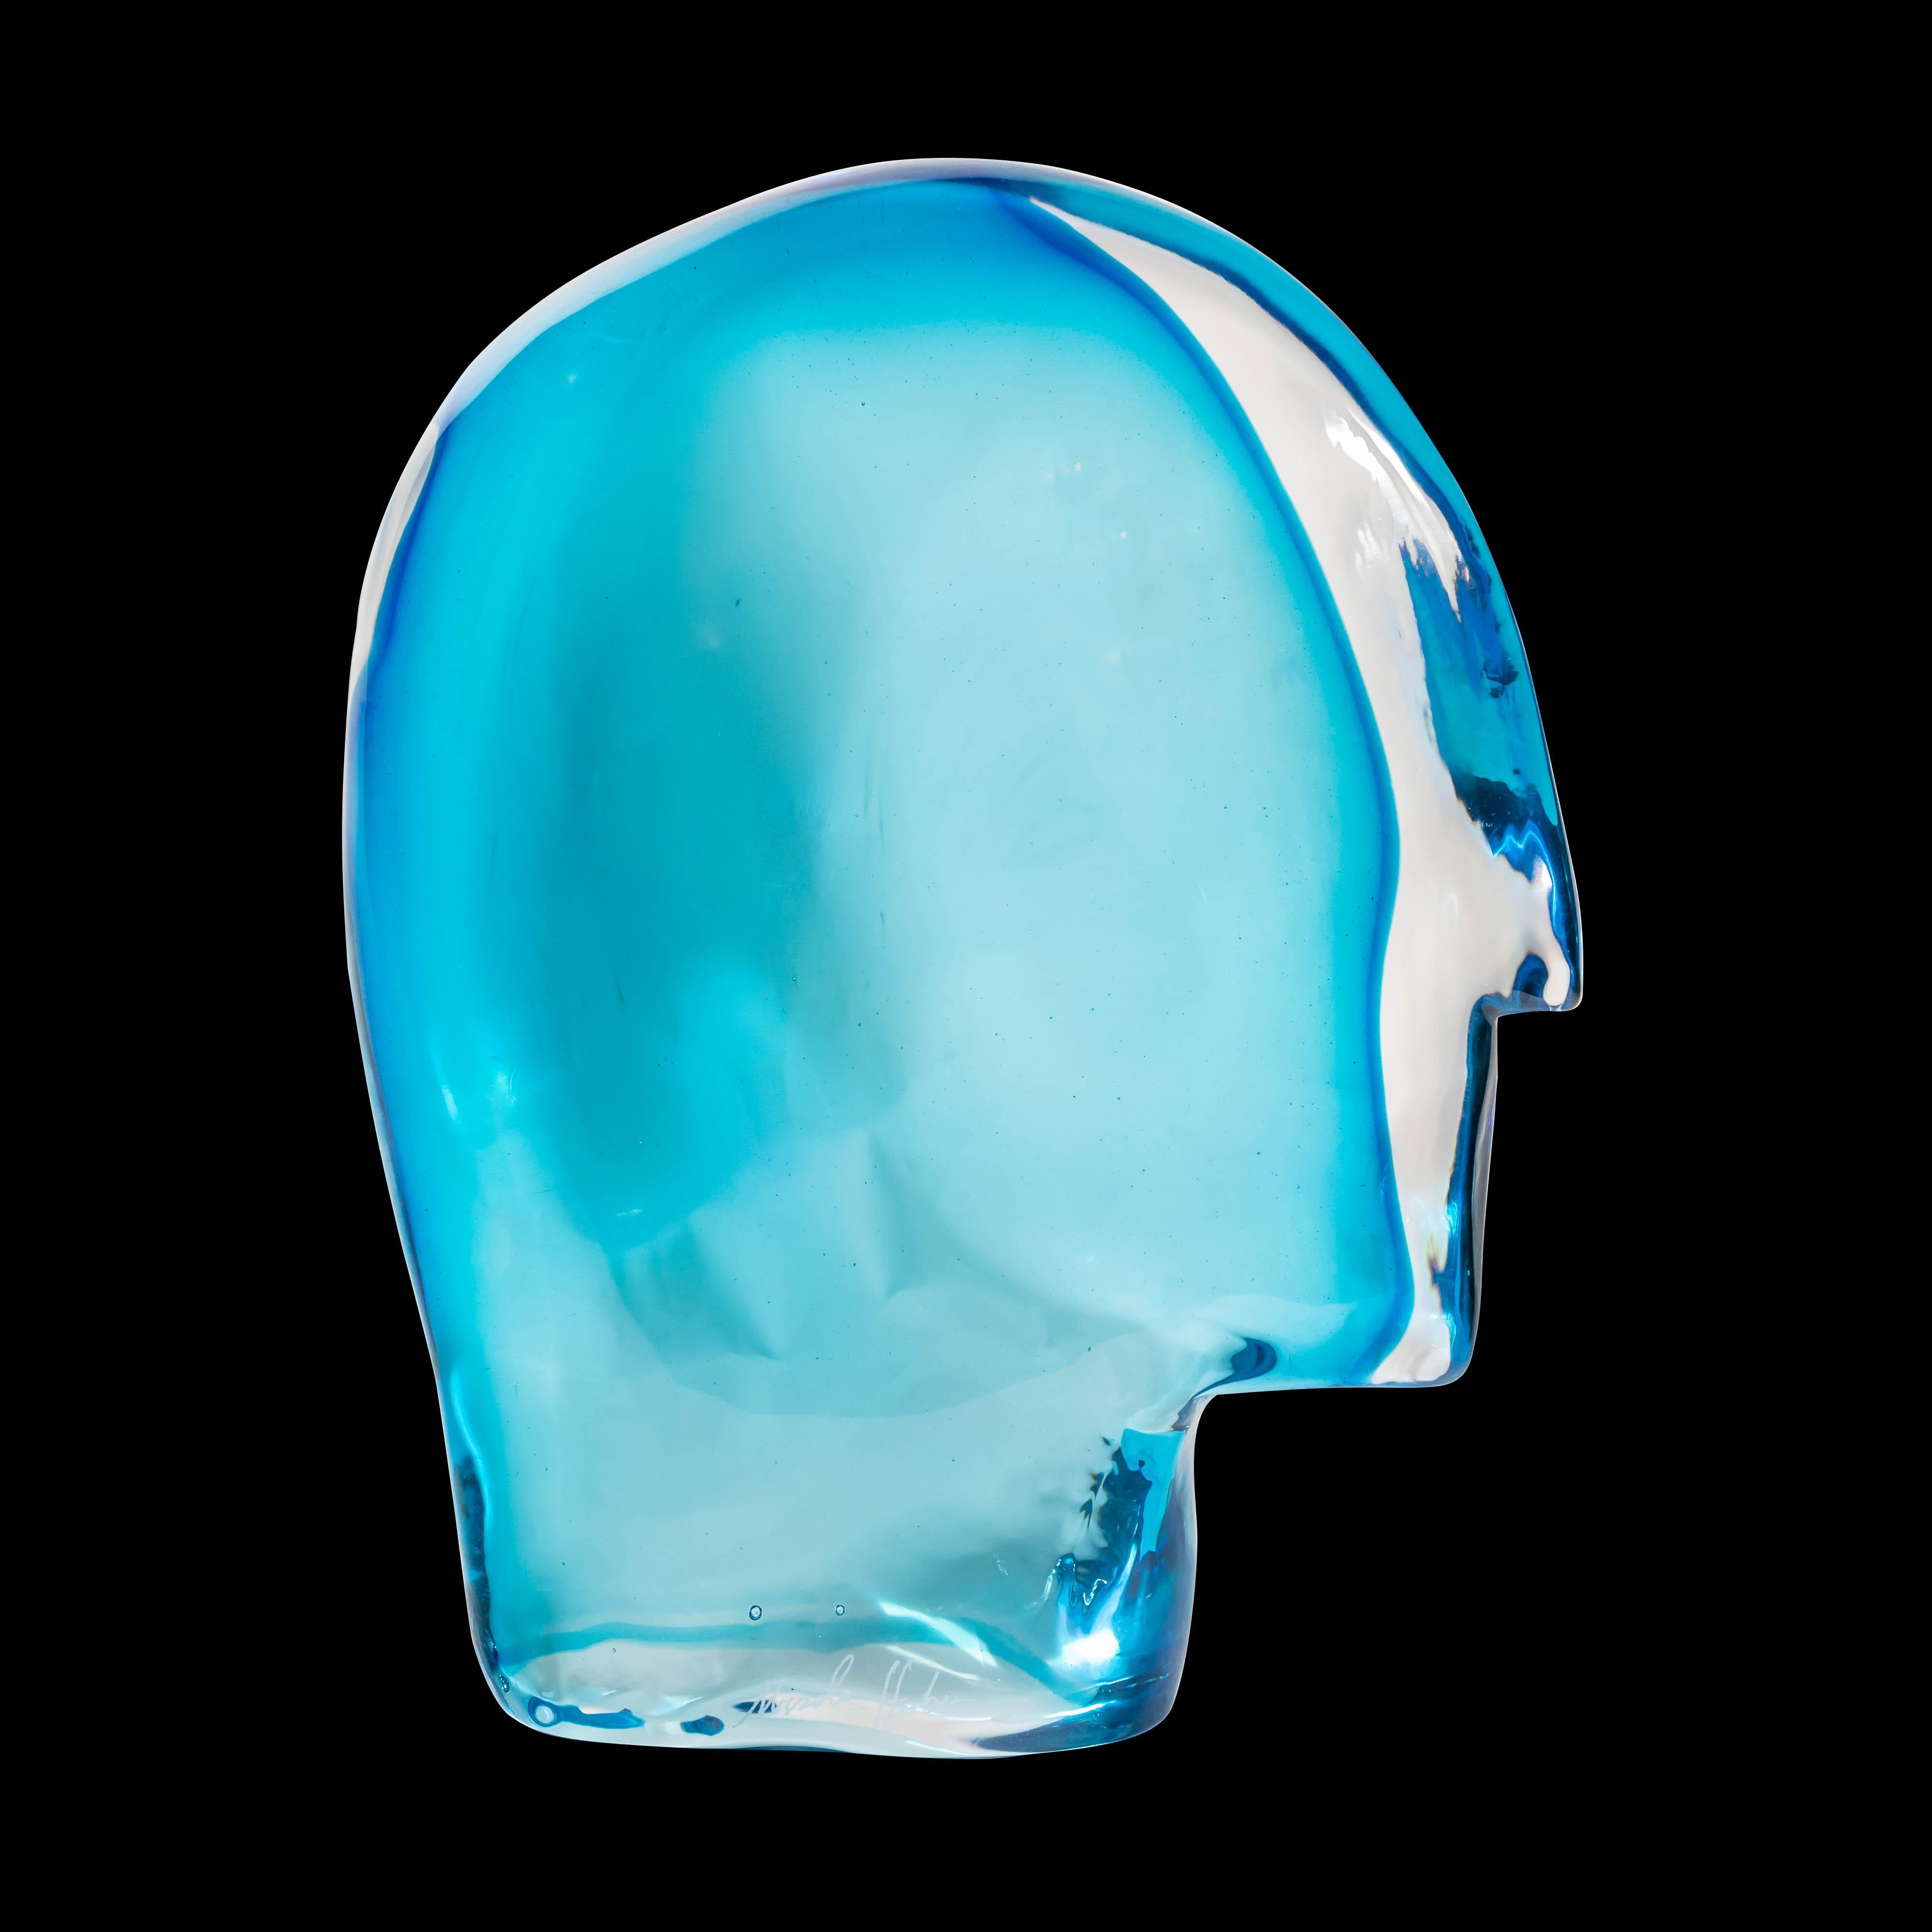 1989 Ego Art Glass Sculpture Light Blue Murano Glass by Artist Ursula Huber For Sale 1